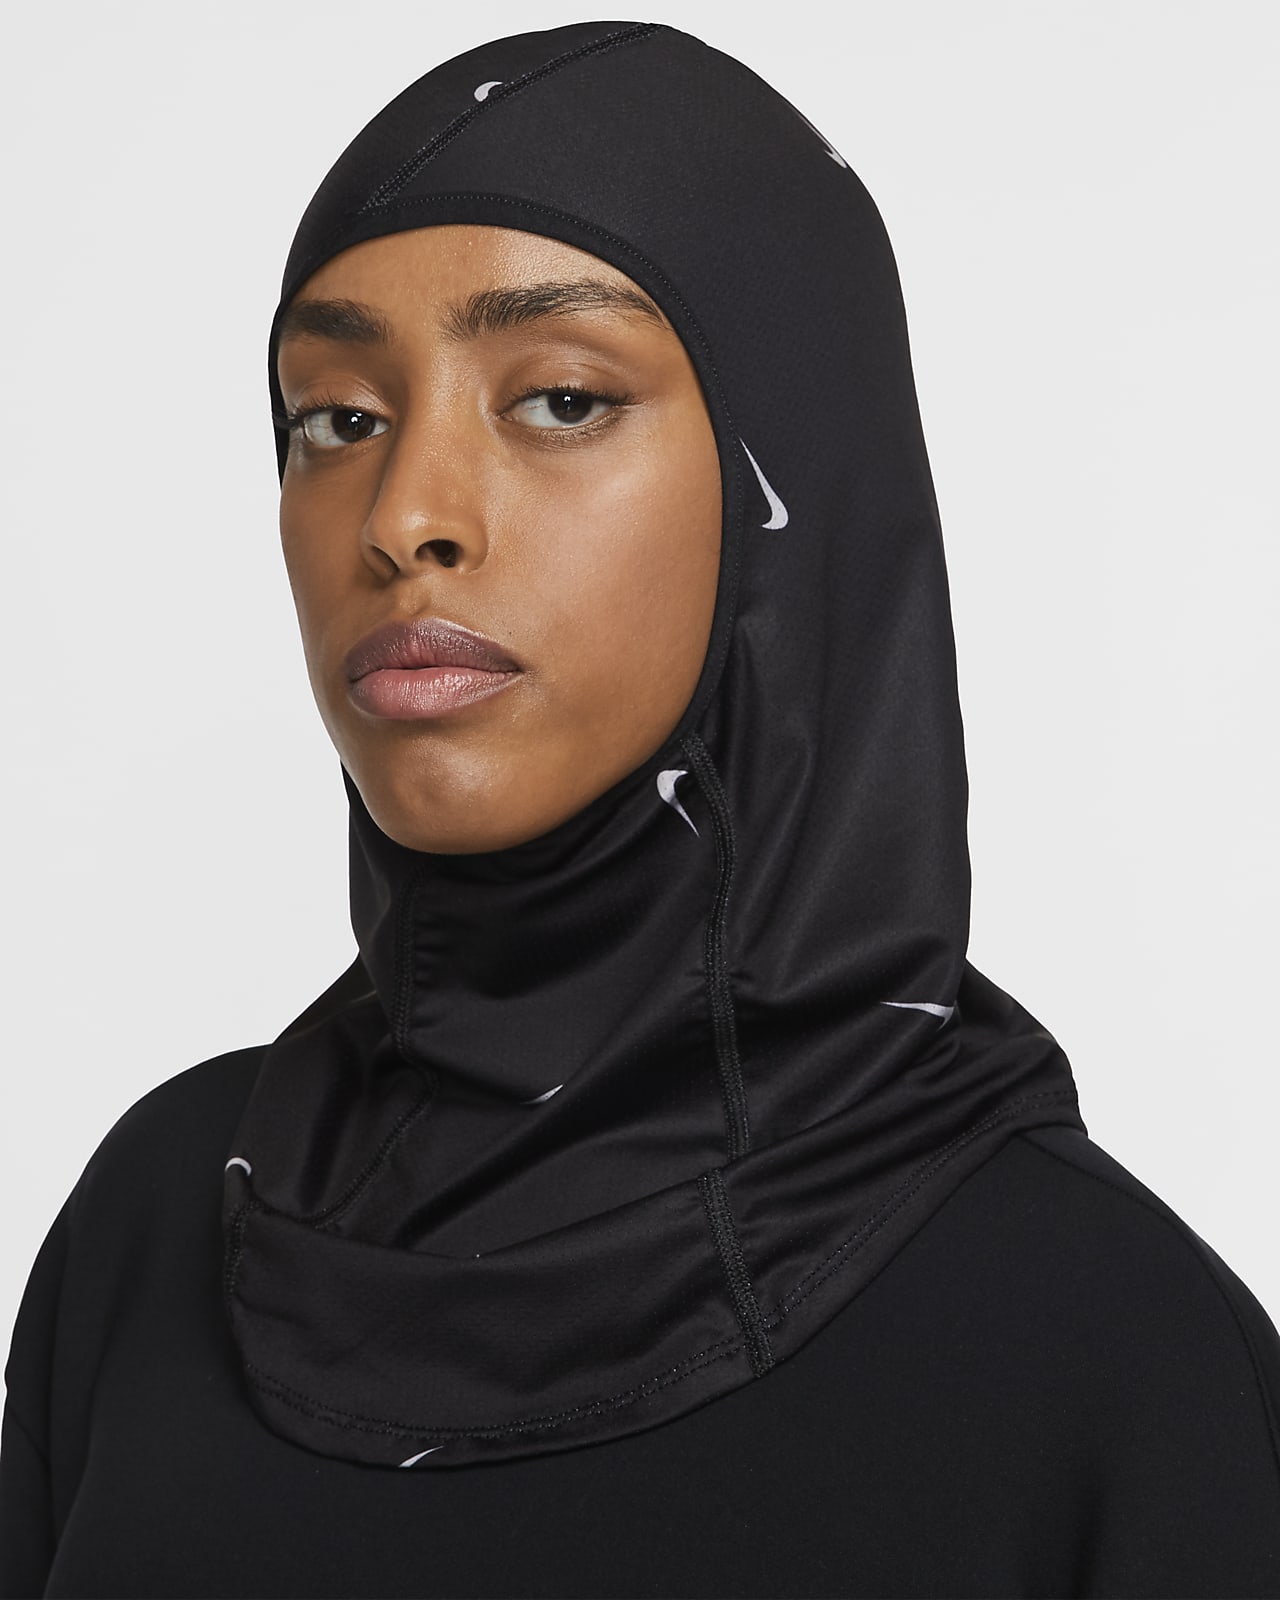 the nike pro hijab